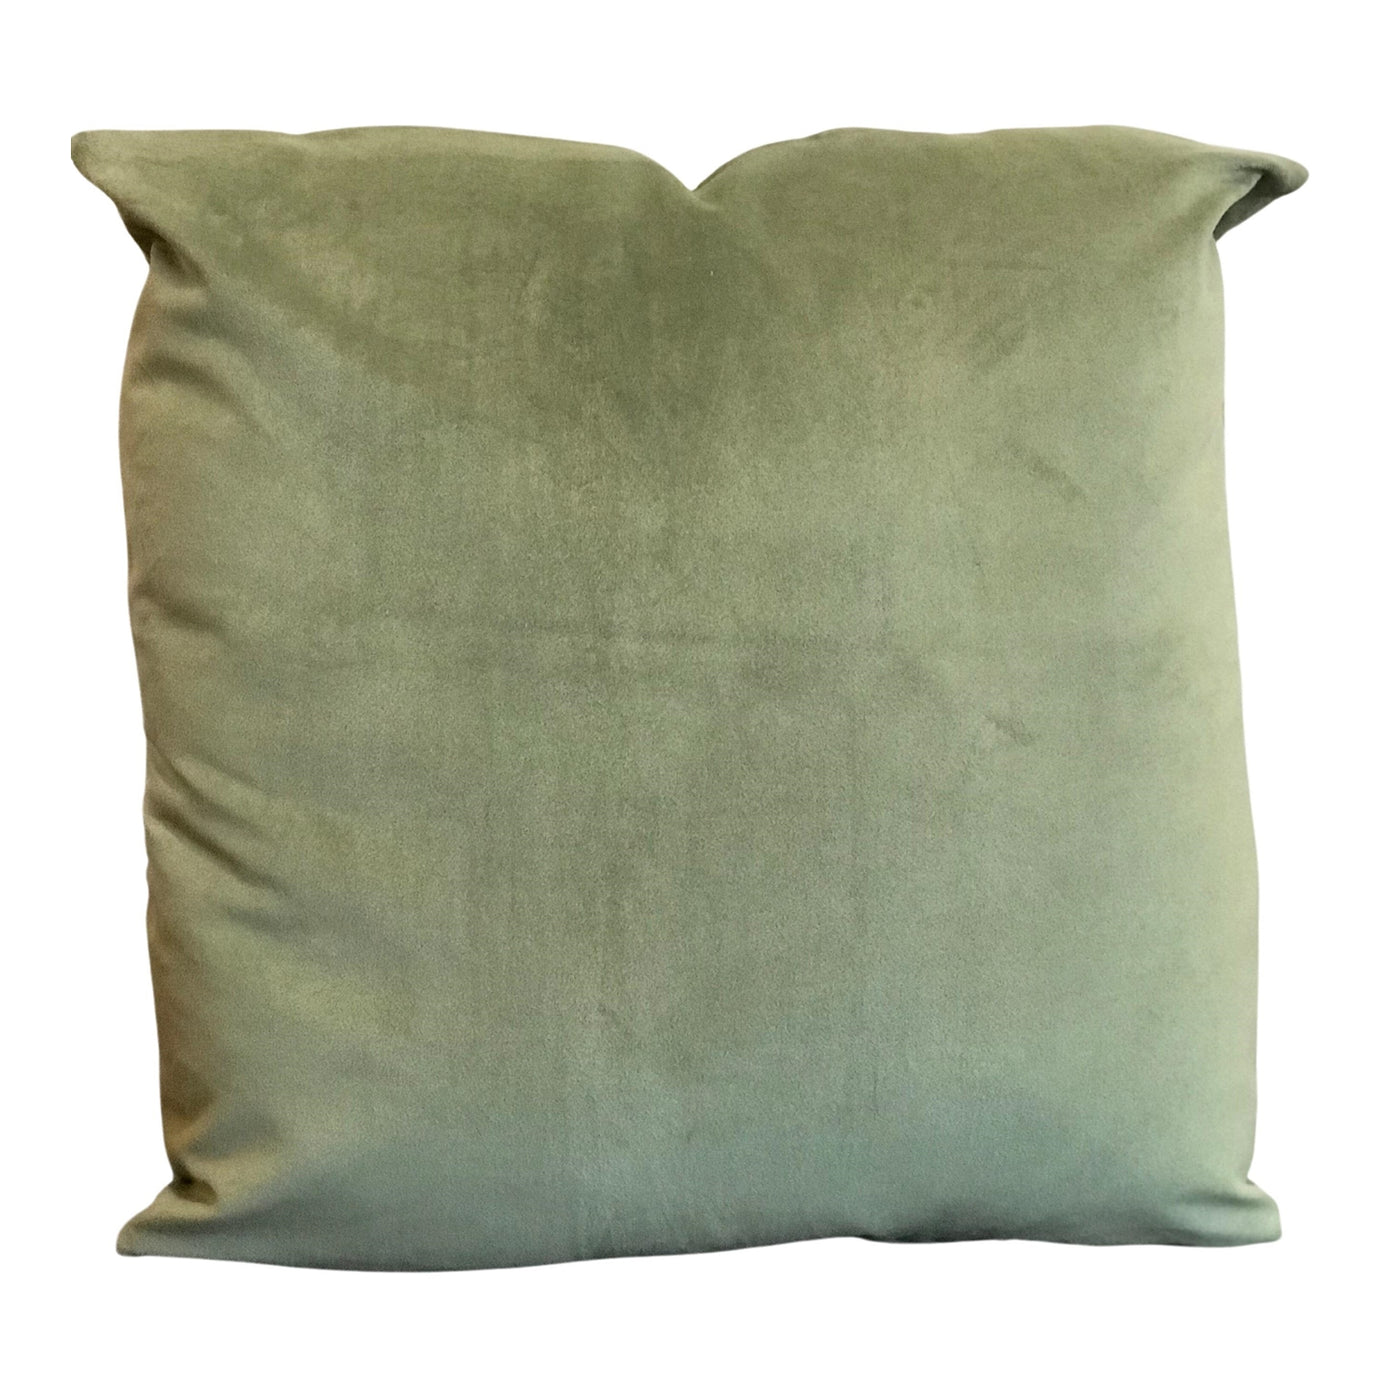 Moss Green Velvet Pillow - 24"